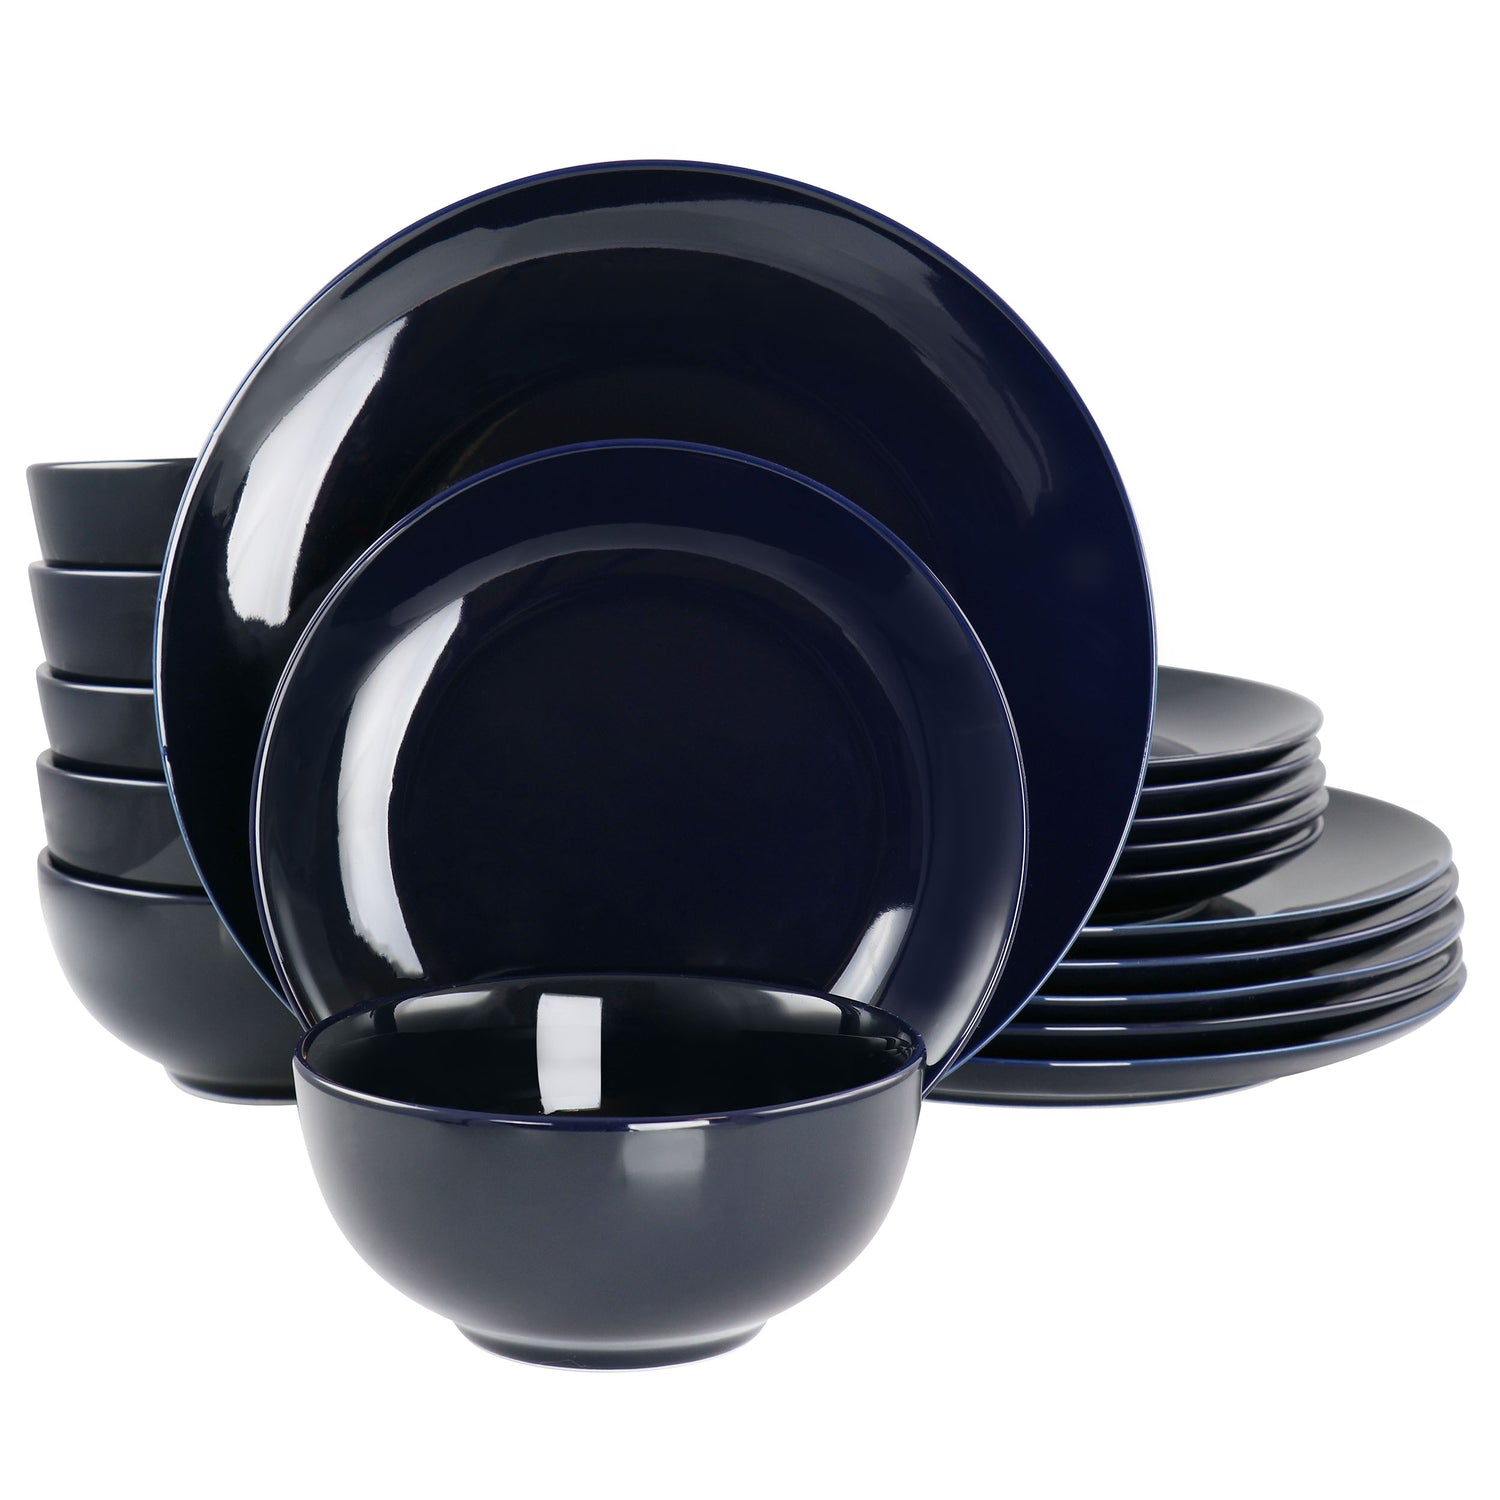 Elama Elama Luna 18 Piece Porcelain Dinnerware Set in Dark Blue